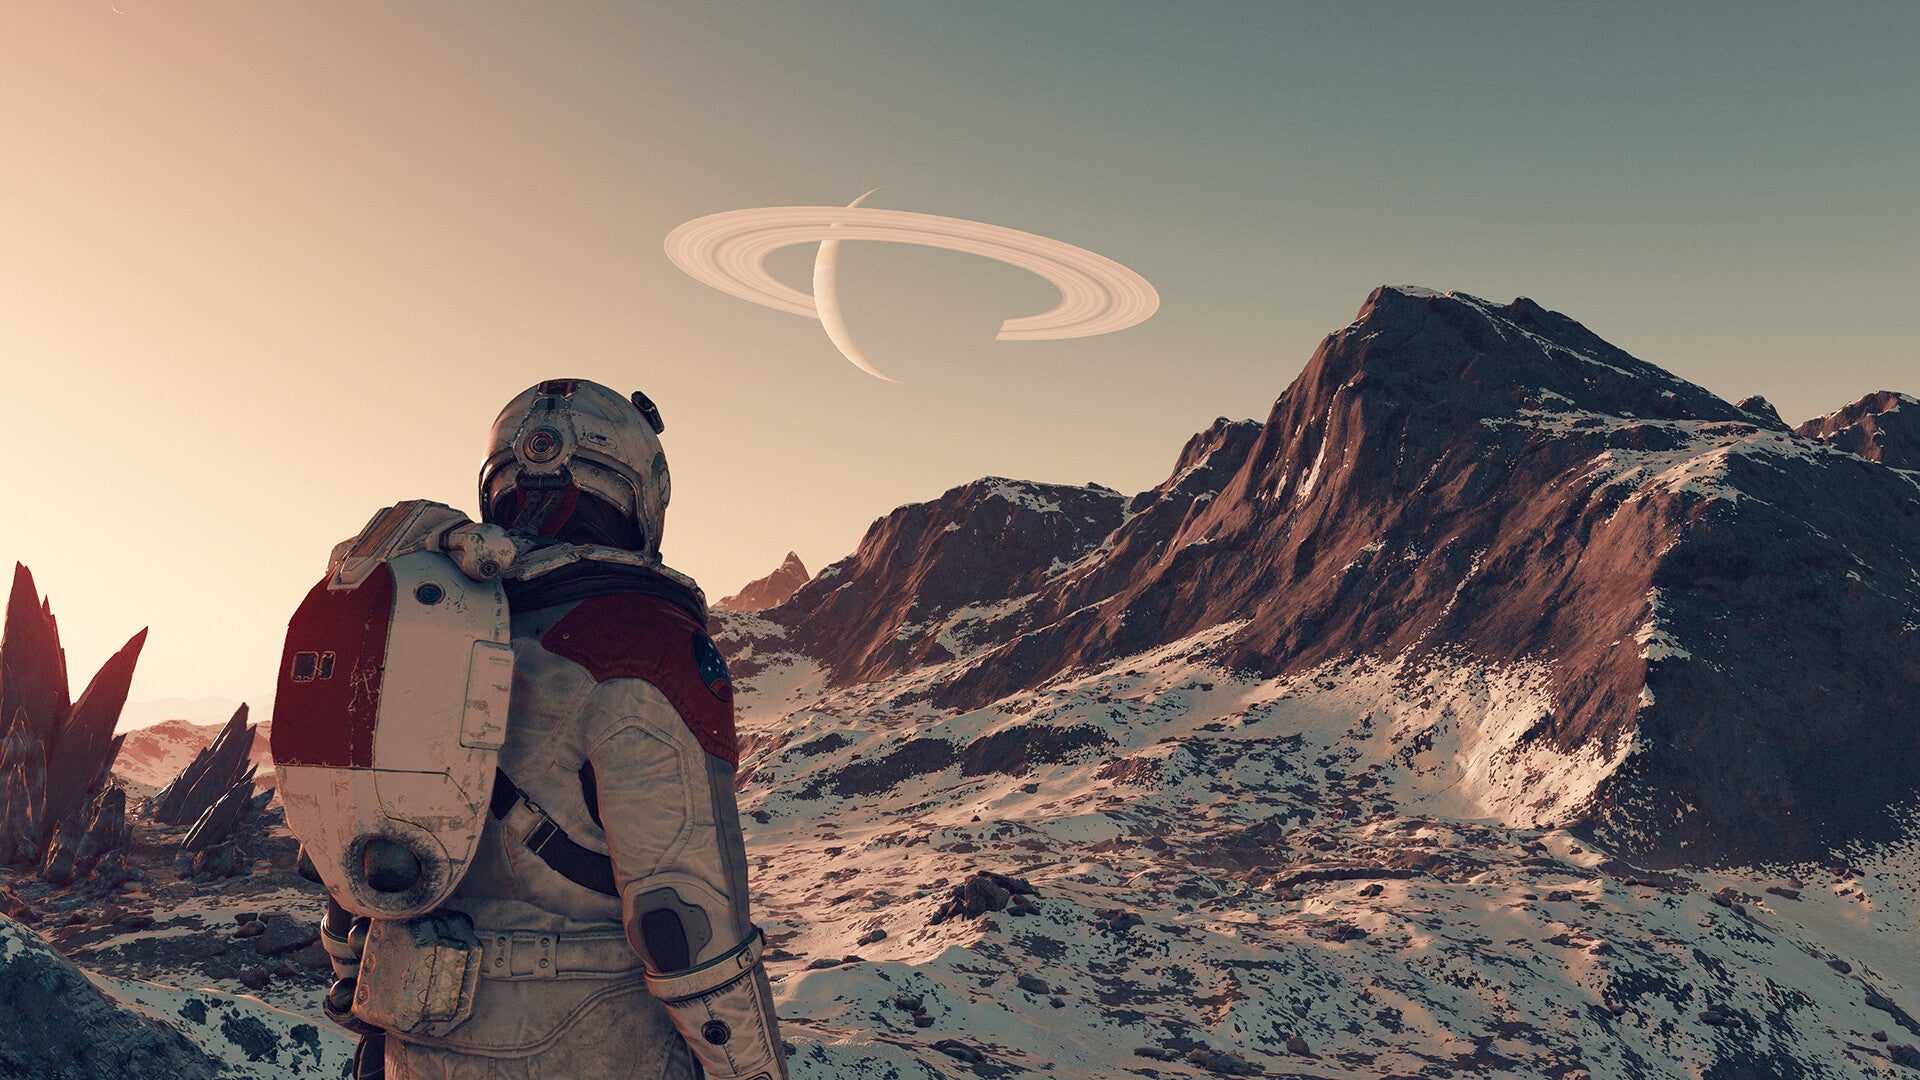 Una captura de pantalla de Starfield que muestra a un astronauta de pie en un entorno árido y montañoso contemplando un planeta anillado visible en el cielo brumoso.